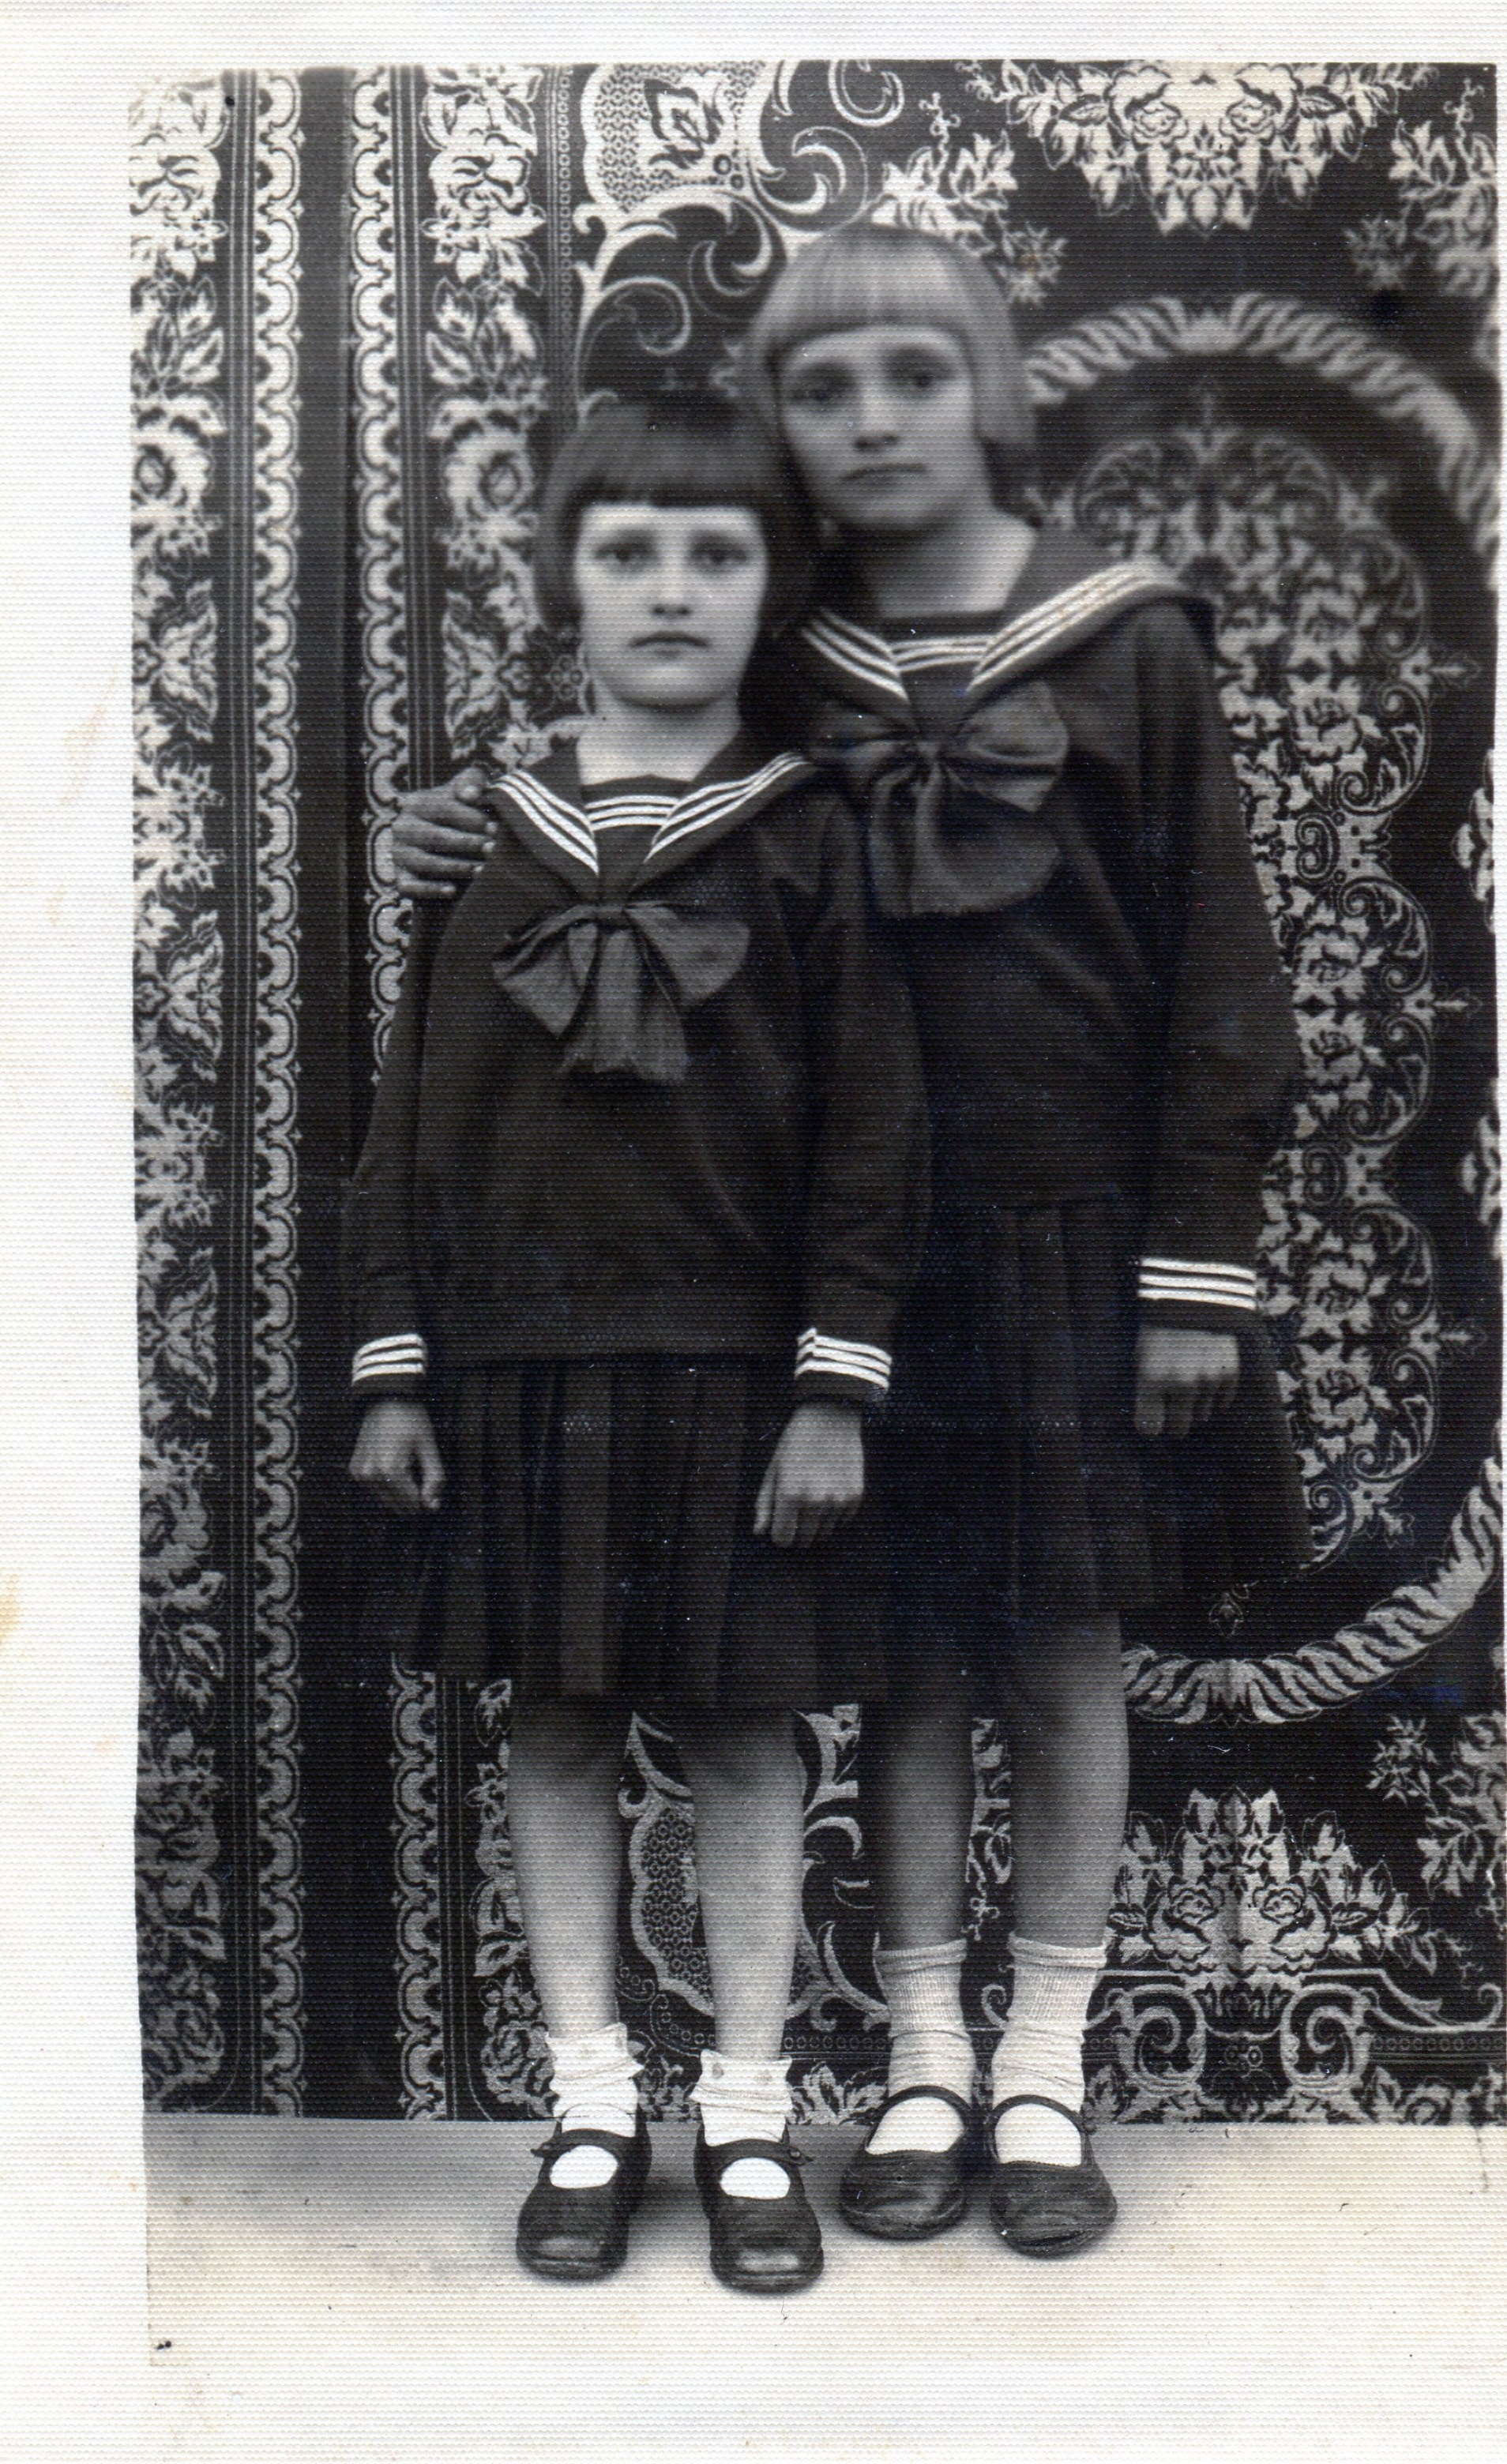 Sisters Olga and Věra Glajchova, 1935